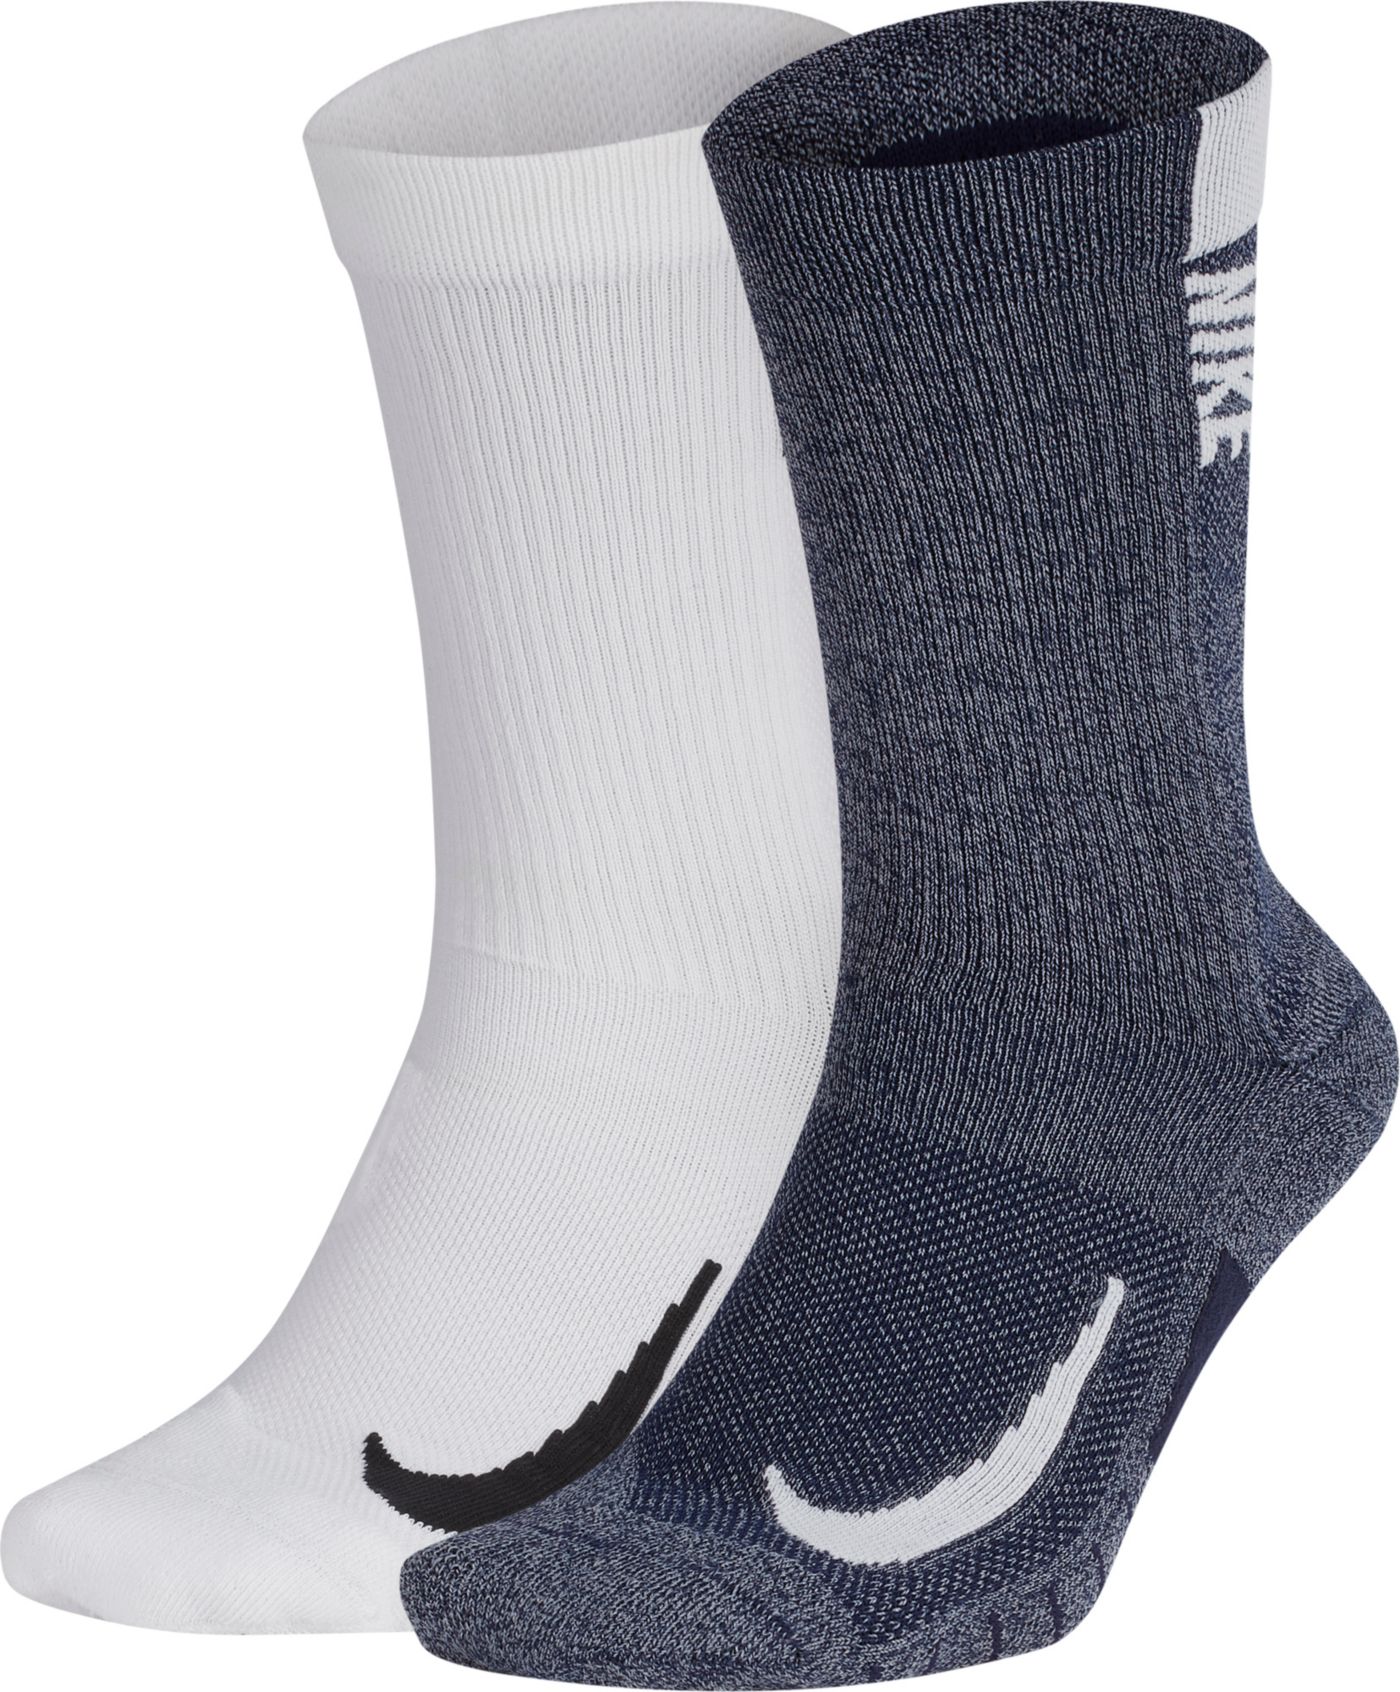 Nike Multiplier Crew Socks - 2 Pack | DICK'S Sporting Goods